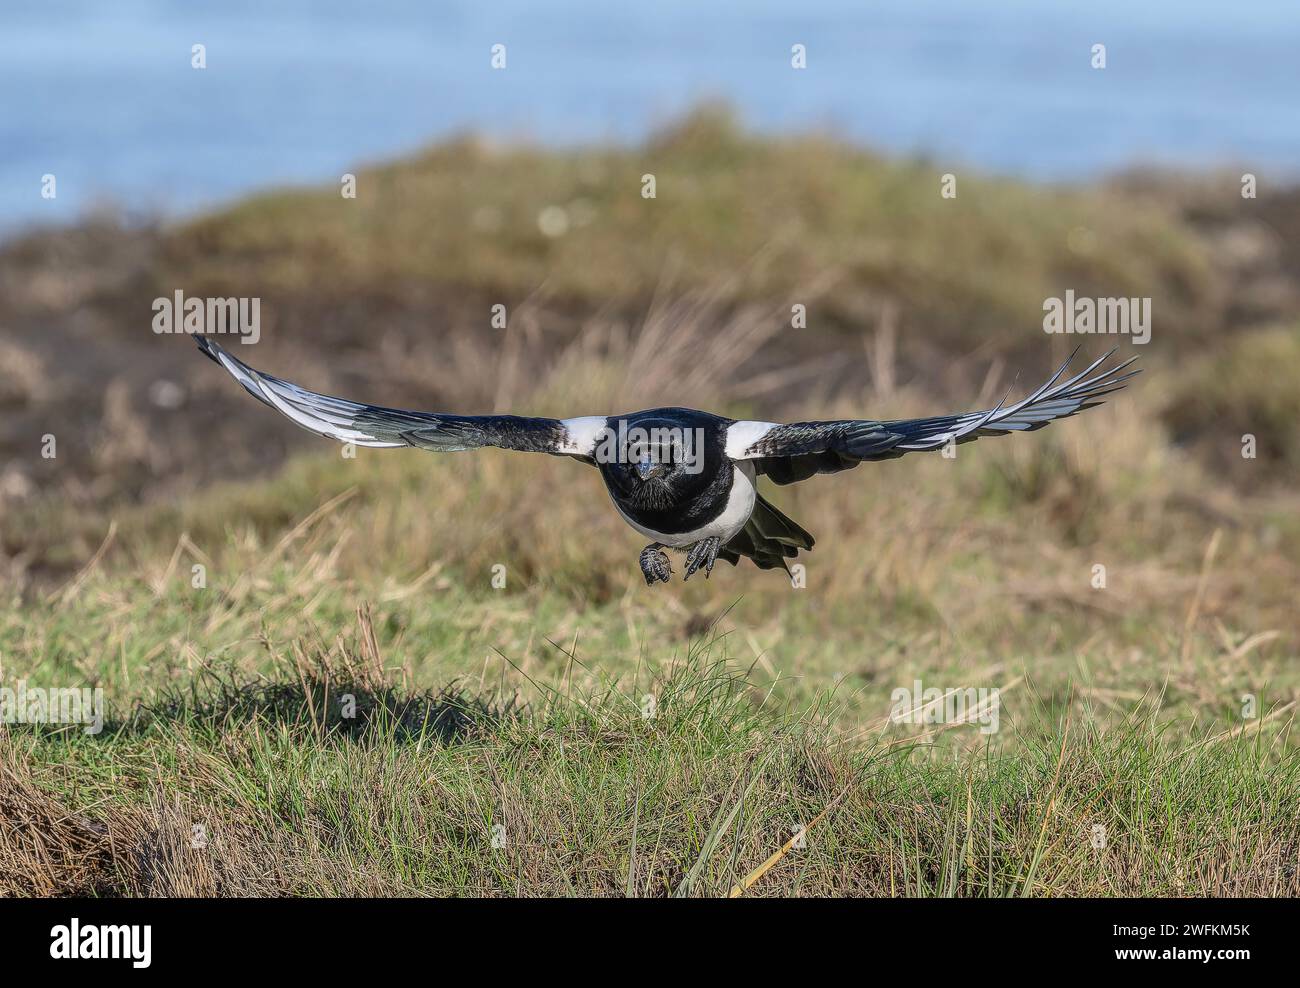 Common magpie, Pica pica, in flight over grassland, winter. Stock Photo